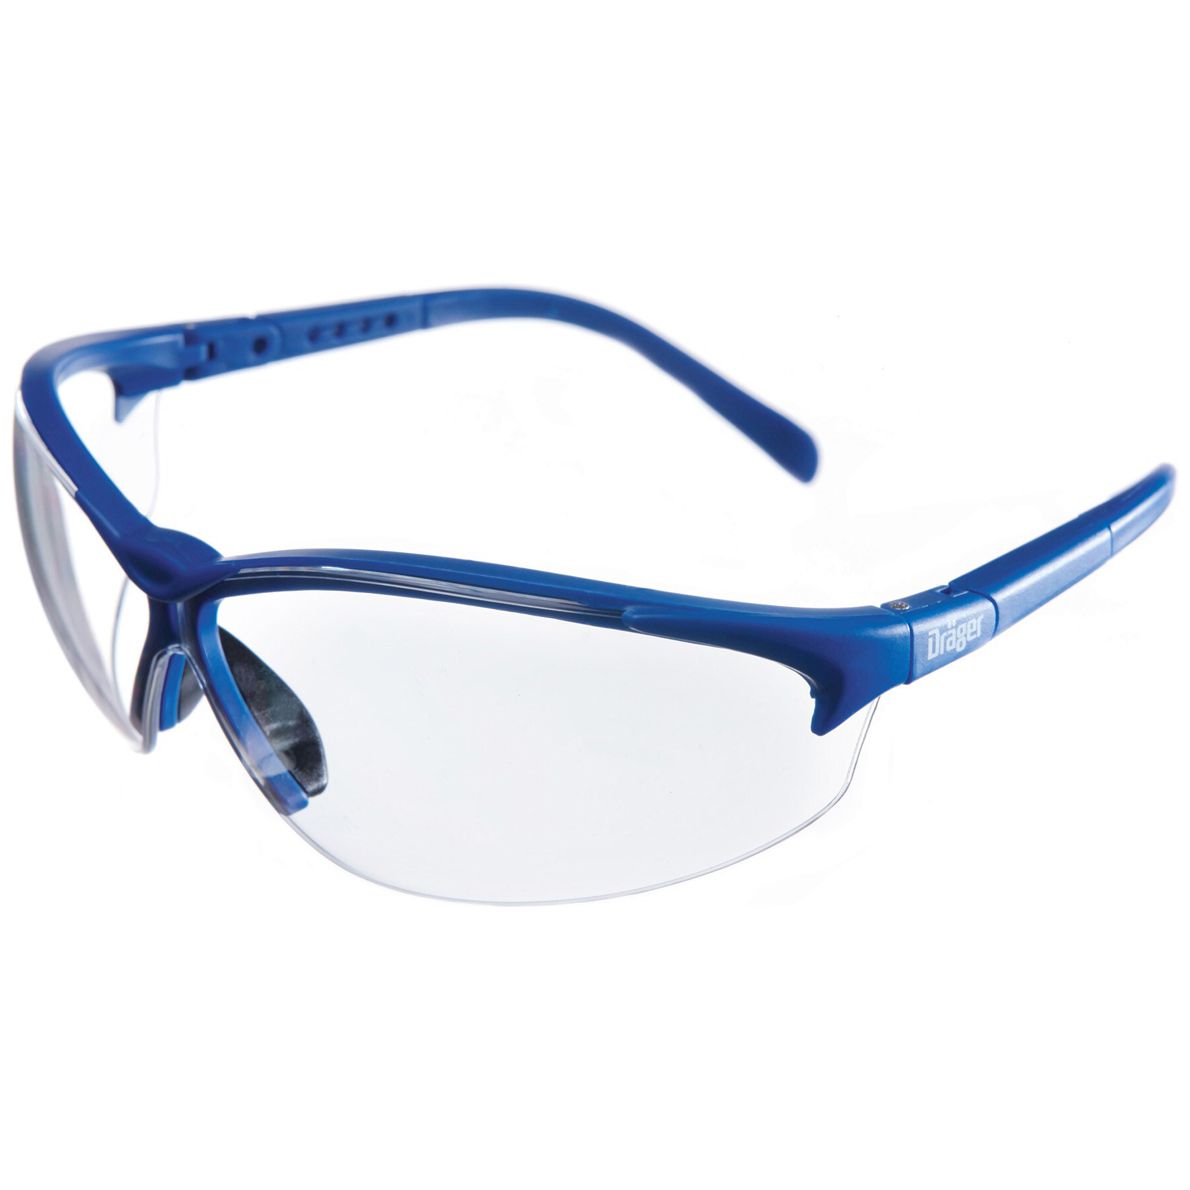 Dräger X-pect 8340 Schutzbrille - kratz- & beschlagfest - EN 166 - Blau/Klar